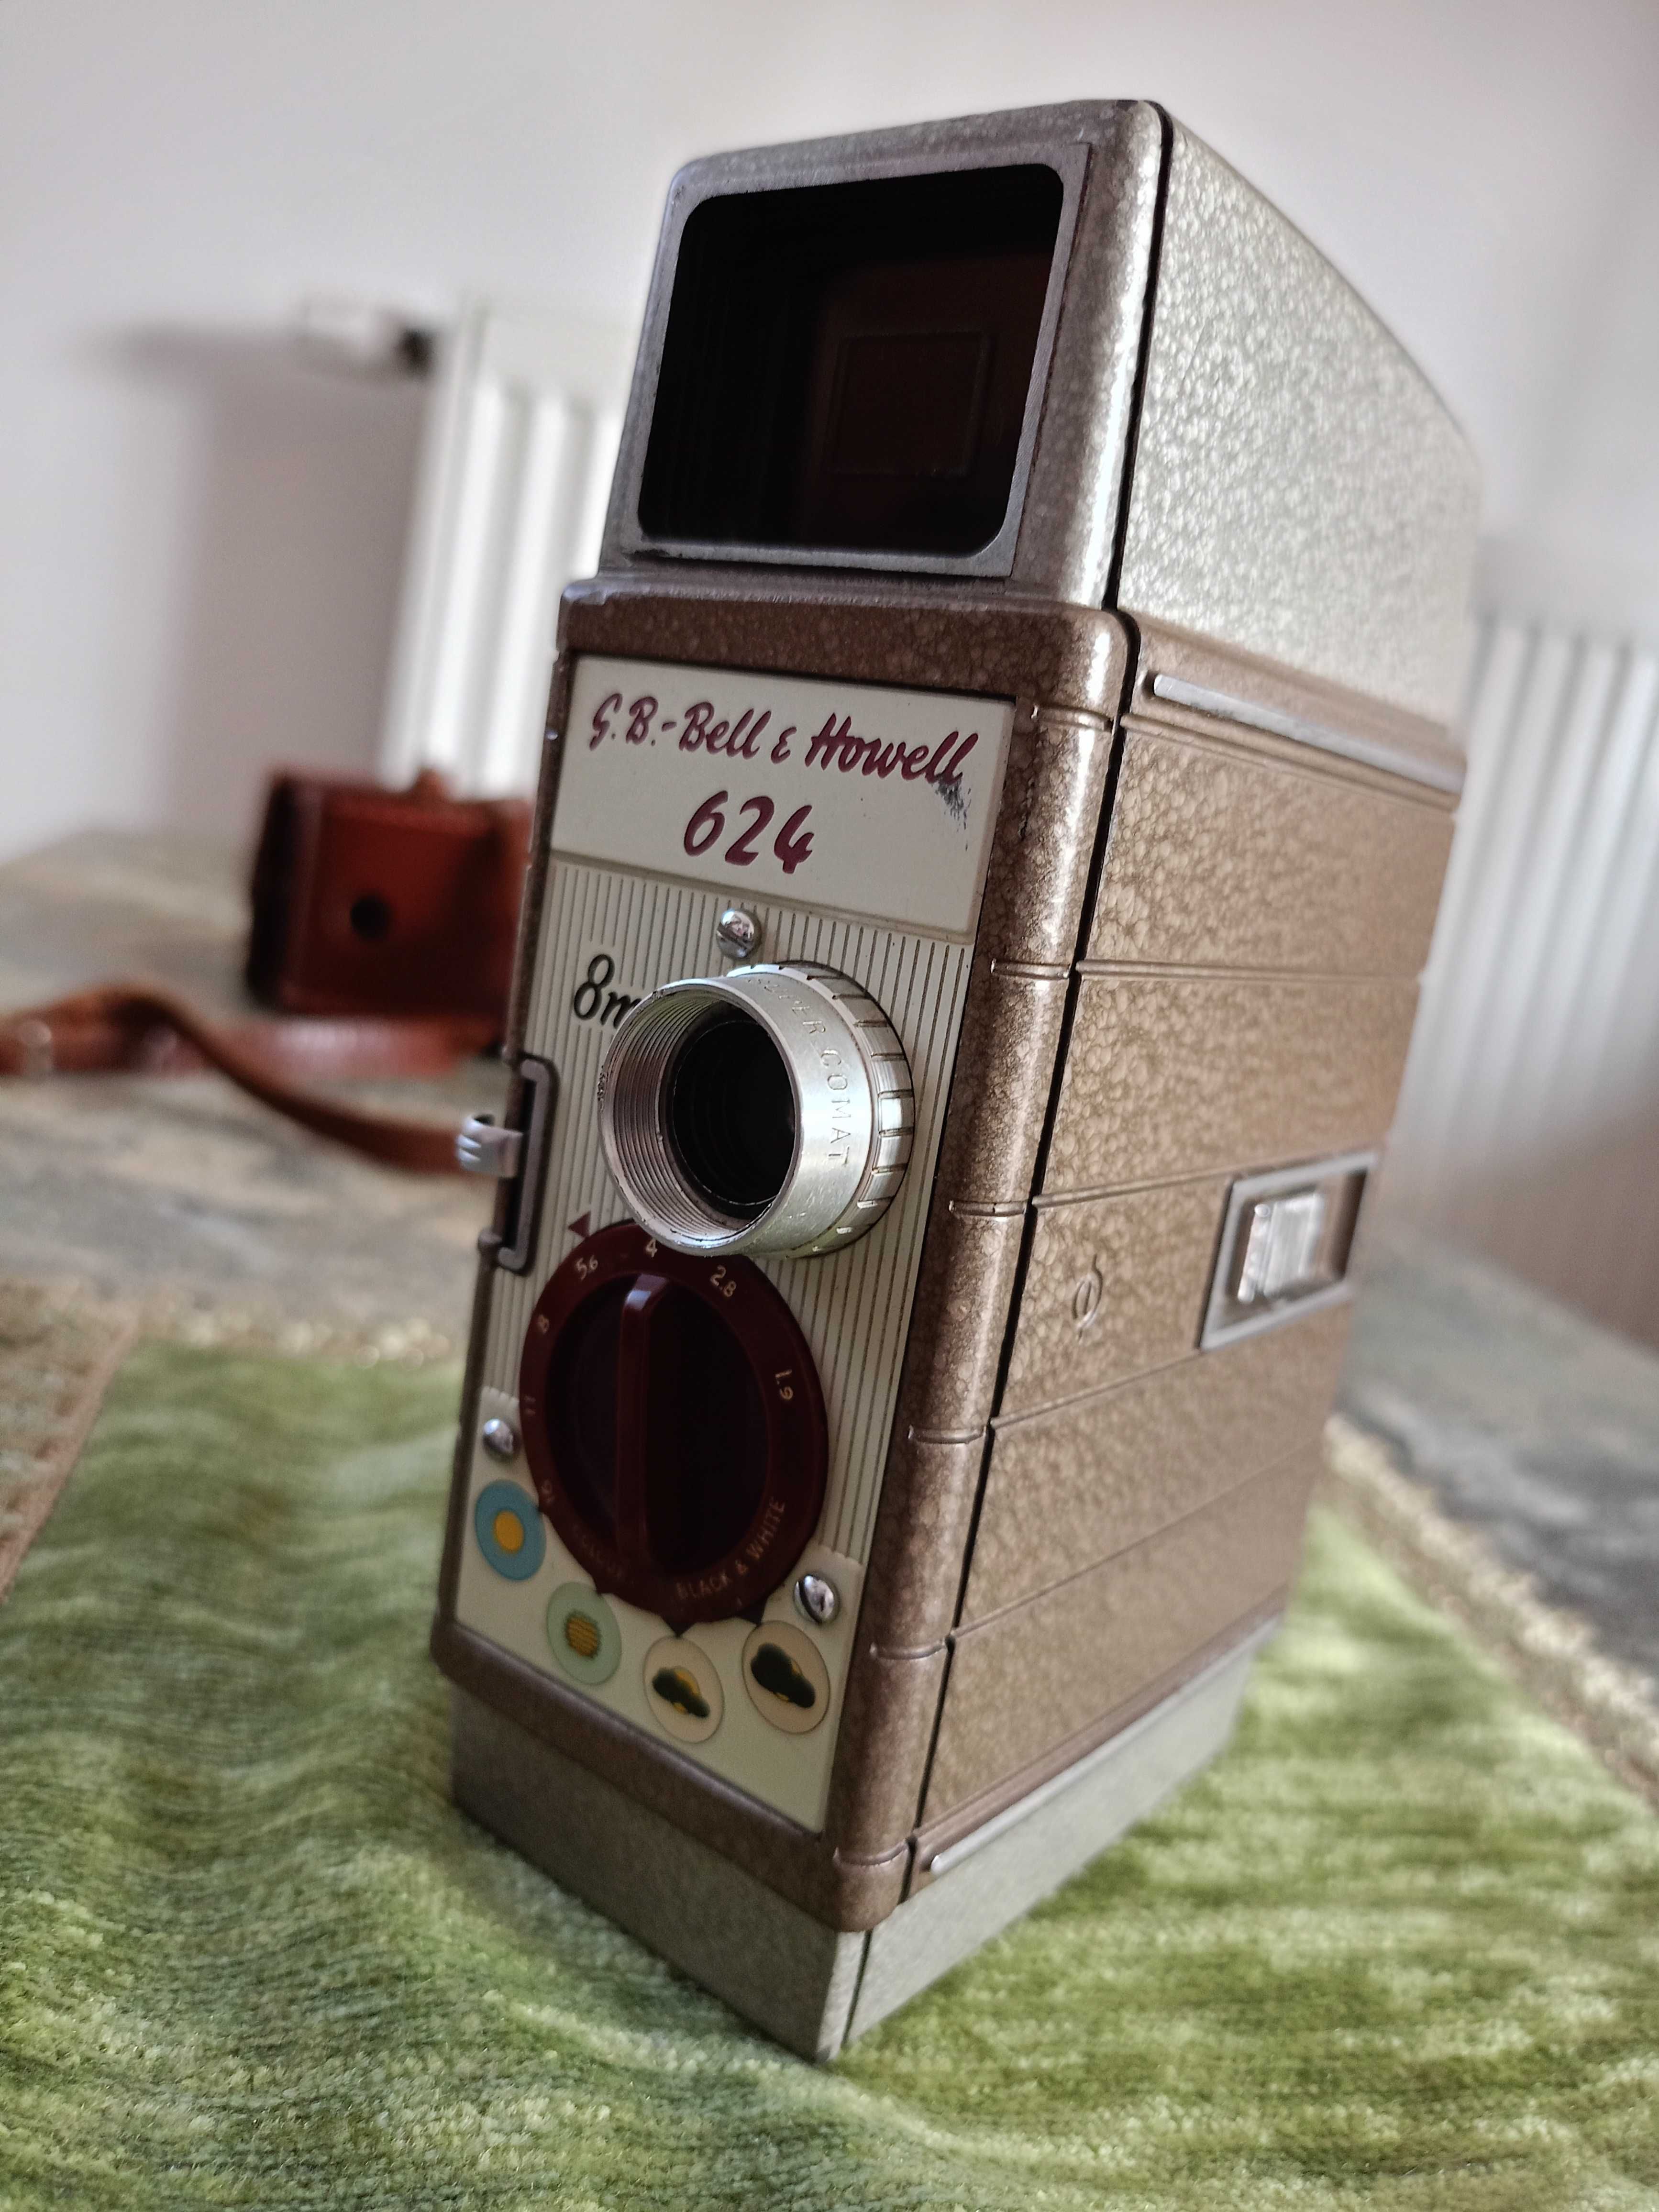 Zabytkowa Kamera G. B. Bell & Howell 624, 8mm Aparat Vintage Unikat